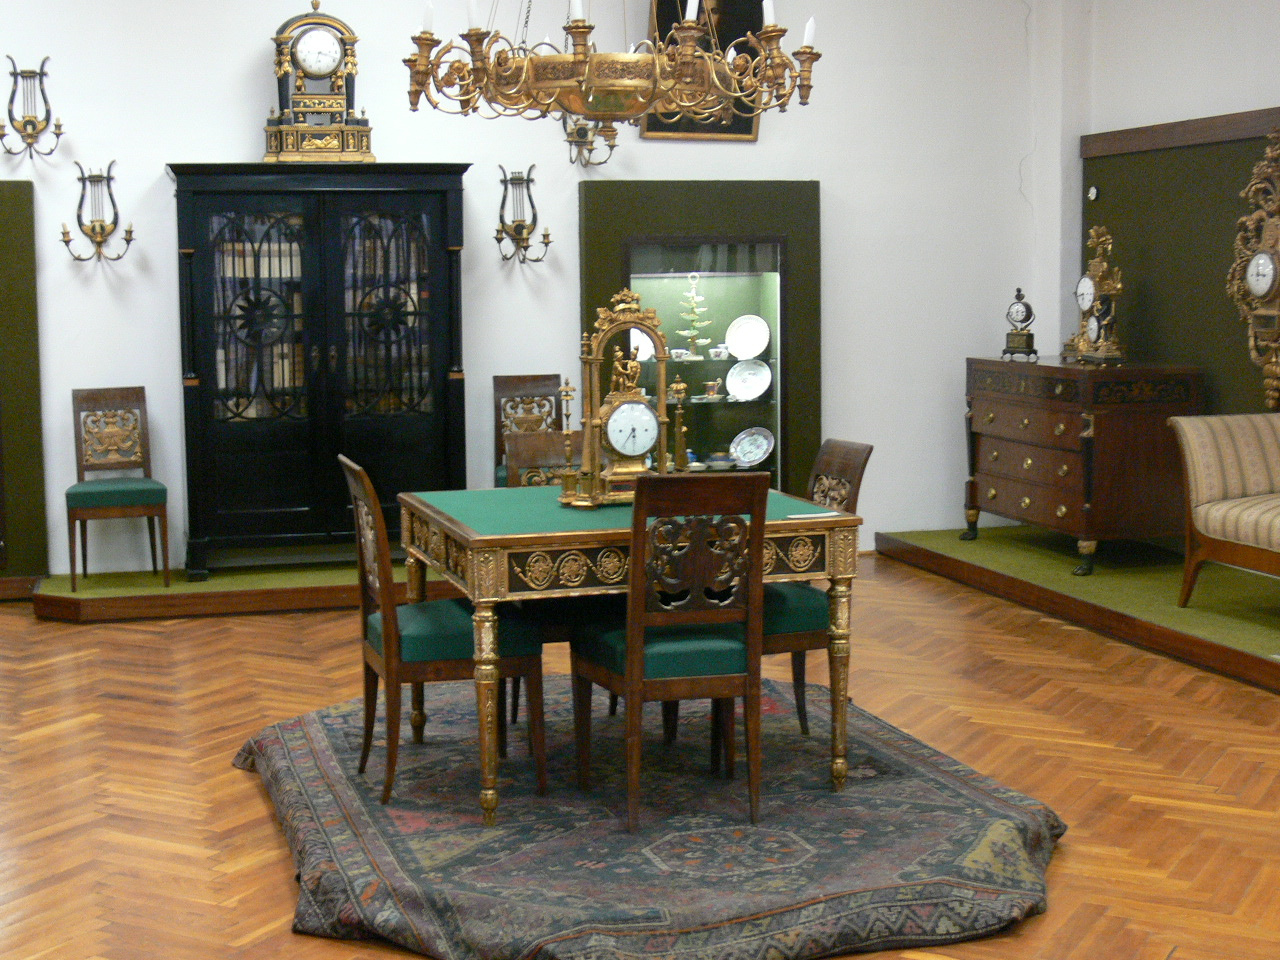 Empire szoba - Smidt Múzeum